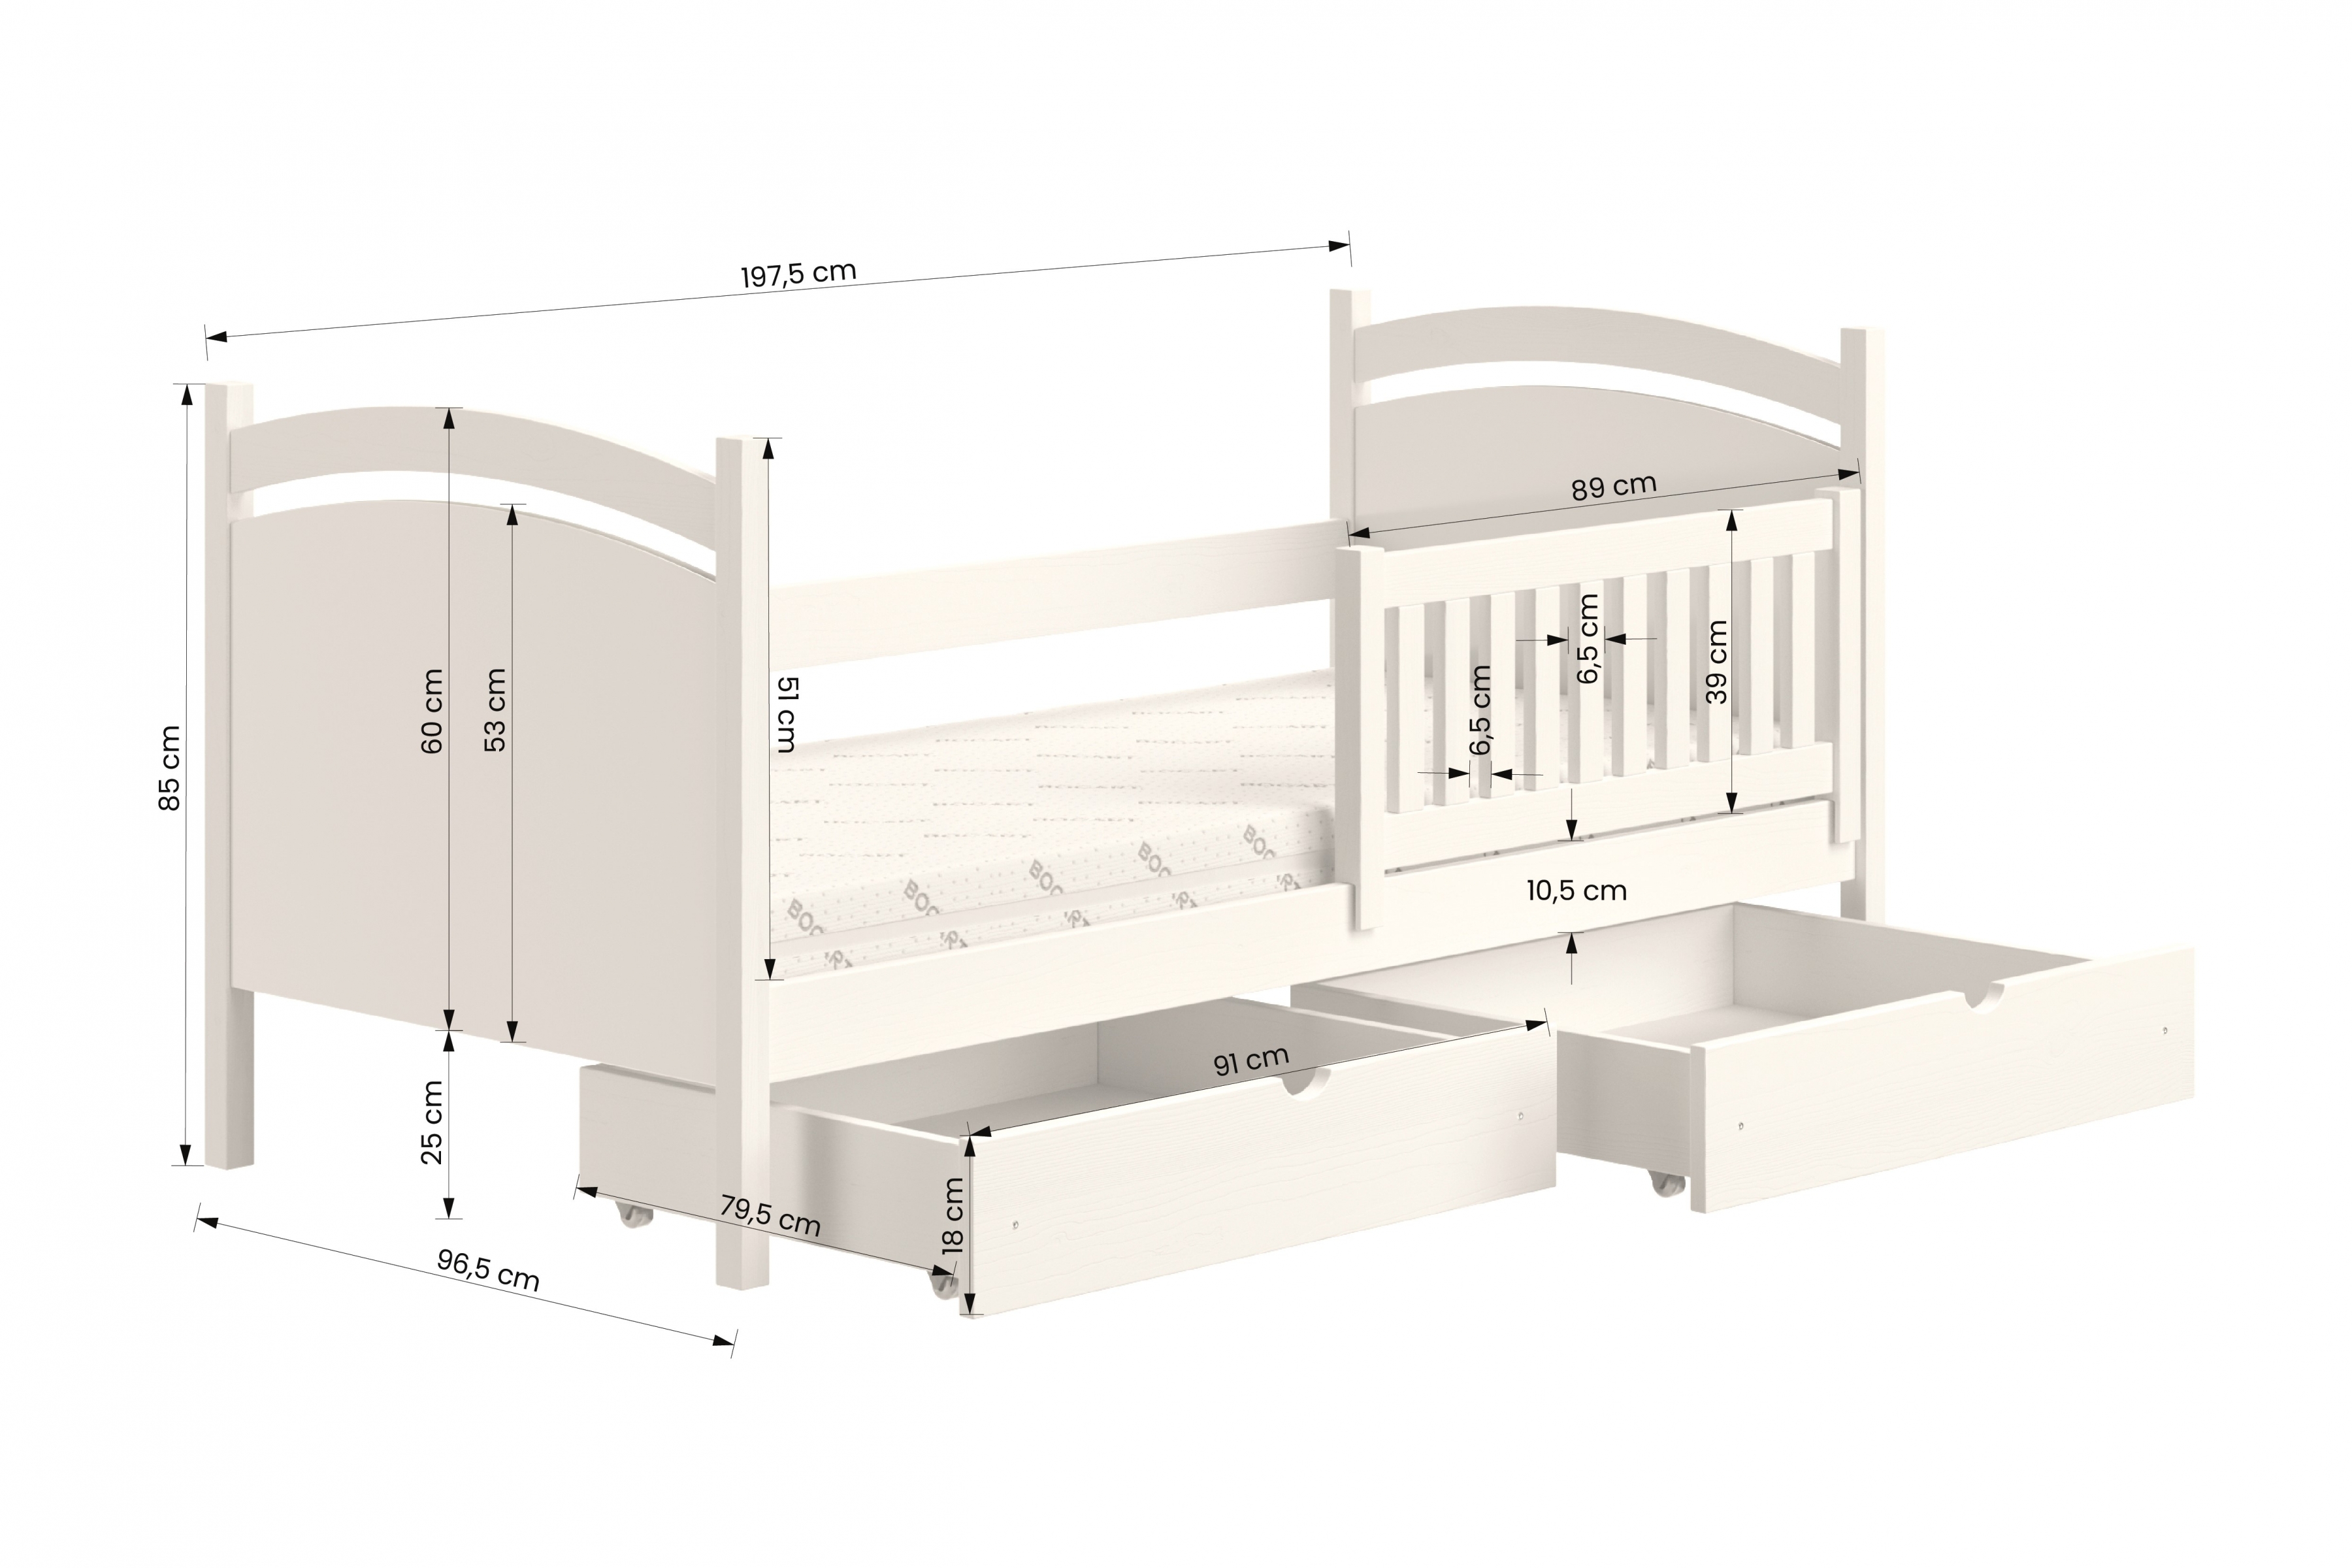 Detská posteľ s tabuľou Amely - Farba Biely, rozmer 90x190  Posteľ dzieciece z tablica suchoscieralna Amely - Rozmery